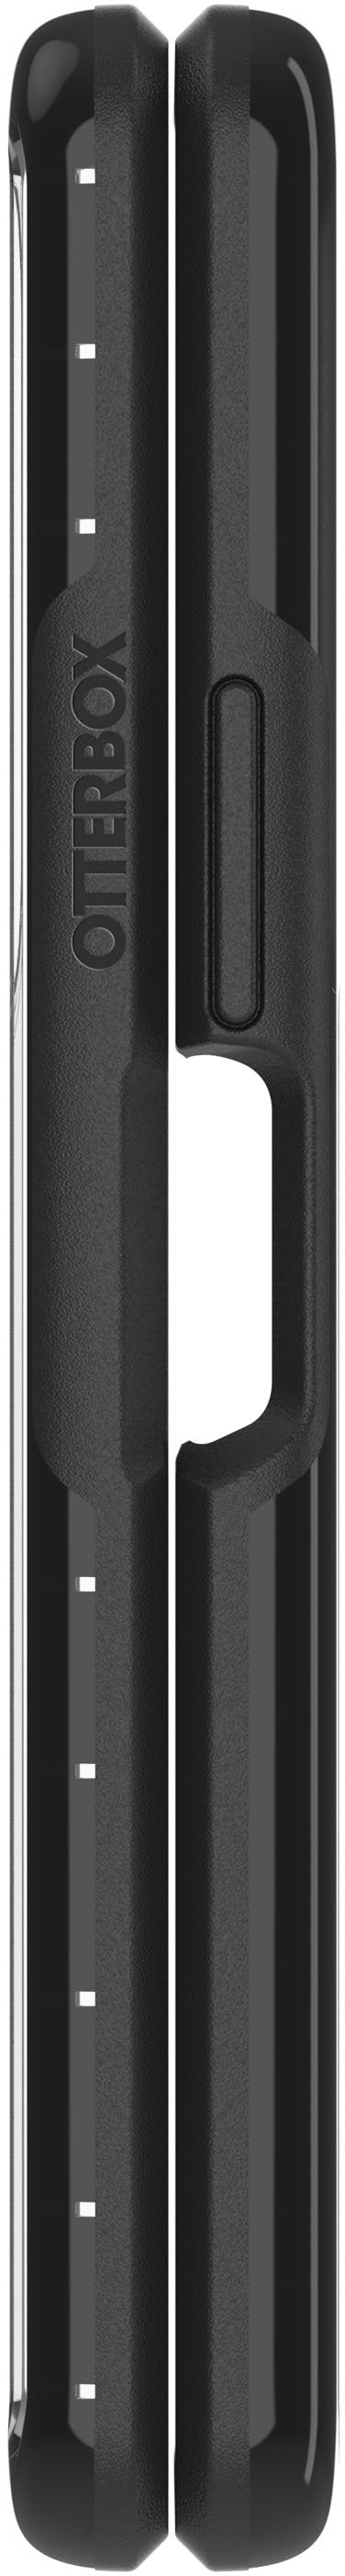 OtterBox - Symmetry Flex Series for Samsung Galaxy Z Fold3 5G - Black Crystal_4